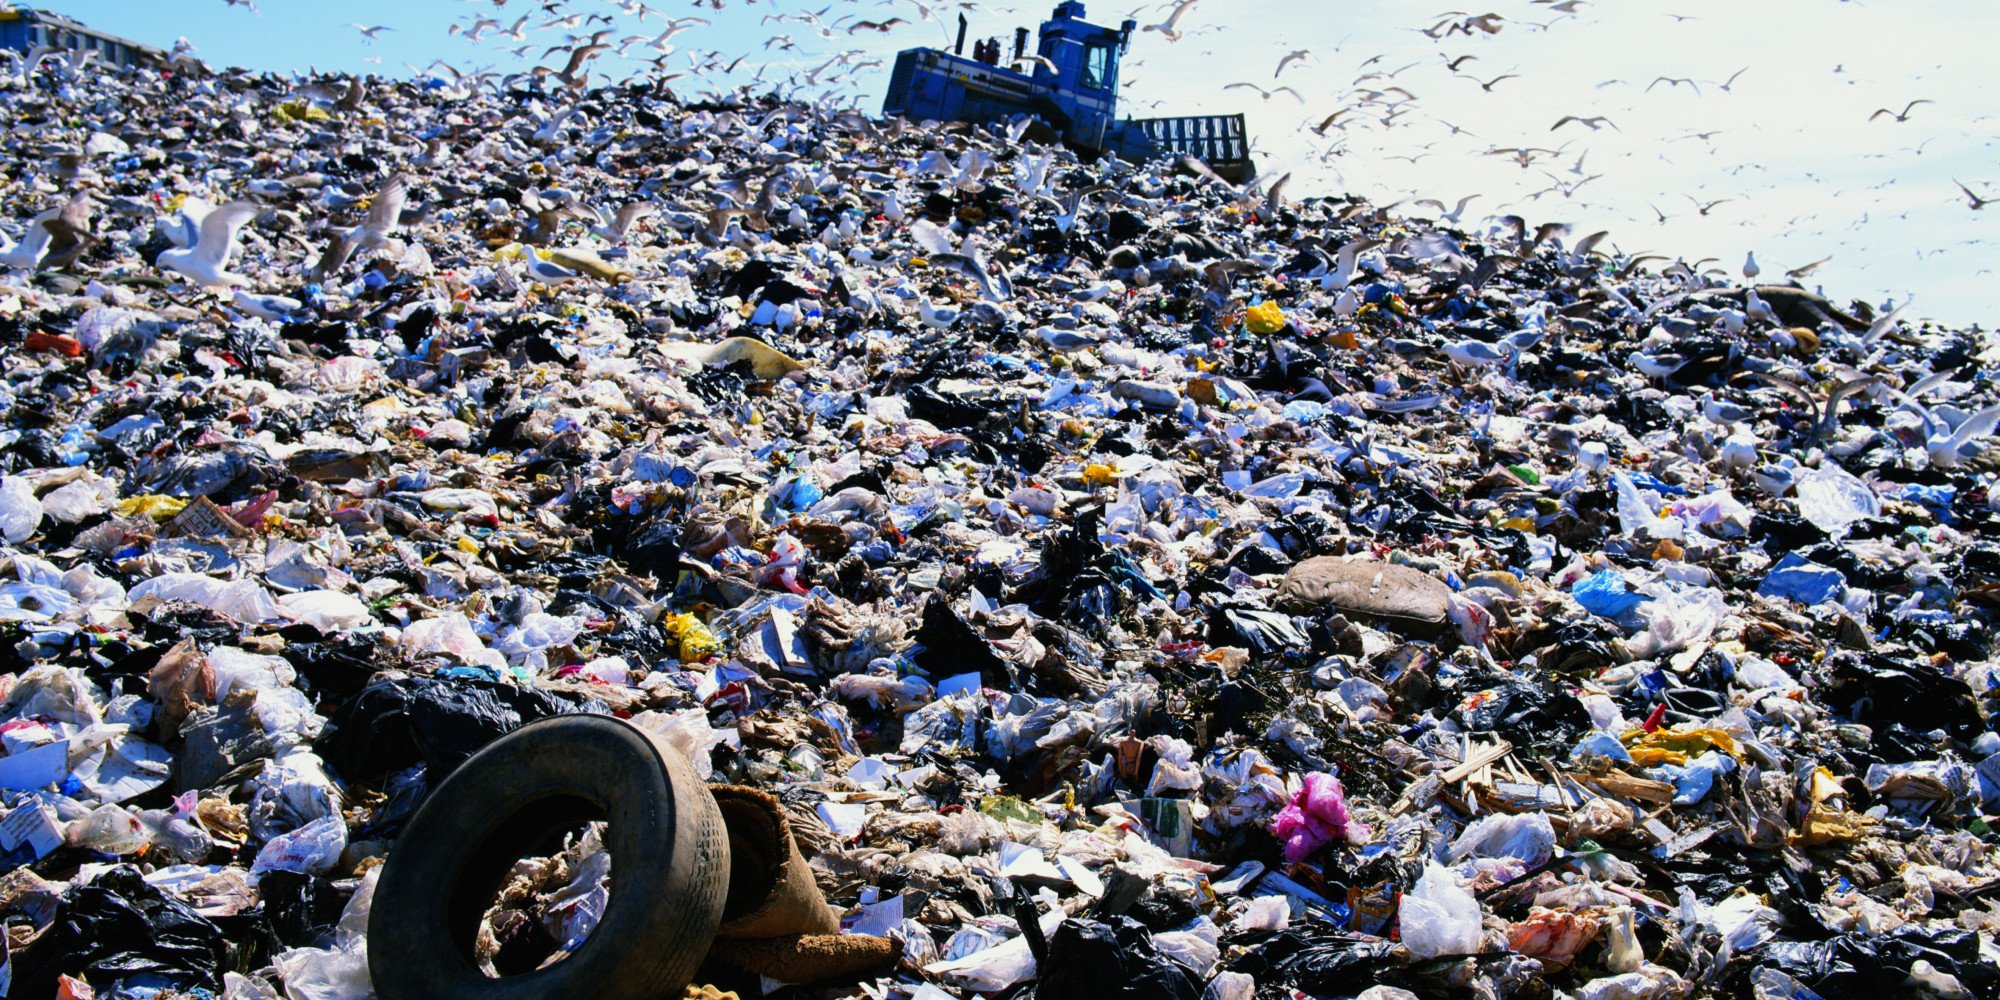 More information about "Σχέδιο για τέλος ταφής σκουπιδιών για τα ανεπεξέργαστα απορρίμματα των δήμων"